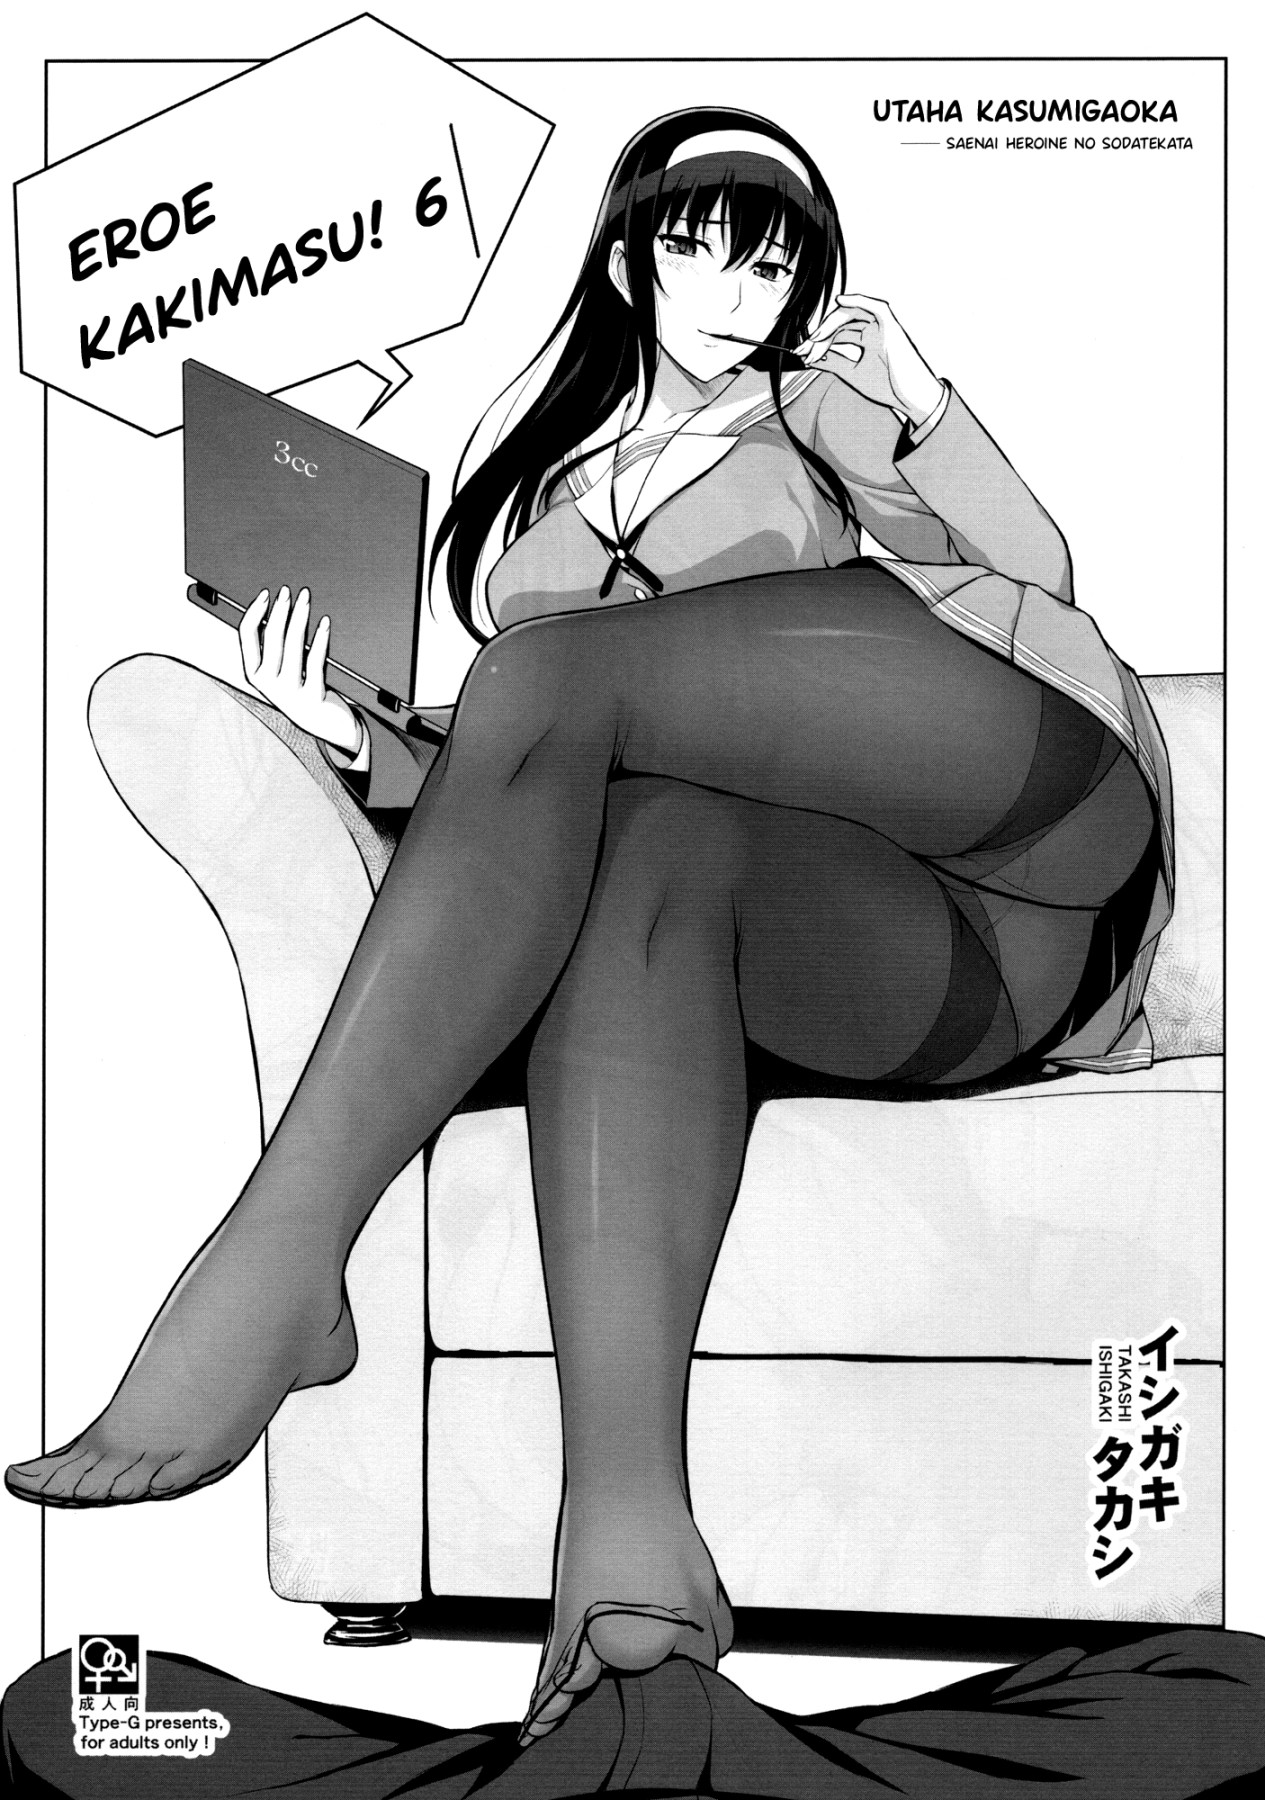 Hentai Manga Comic-EroE Kakimasu! 6 (Various)-Read-1